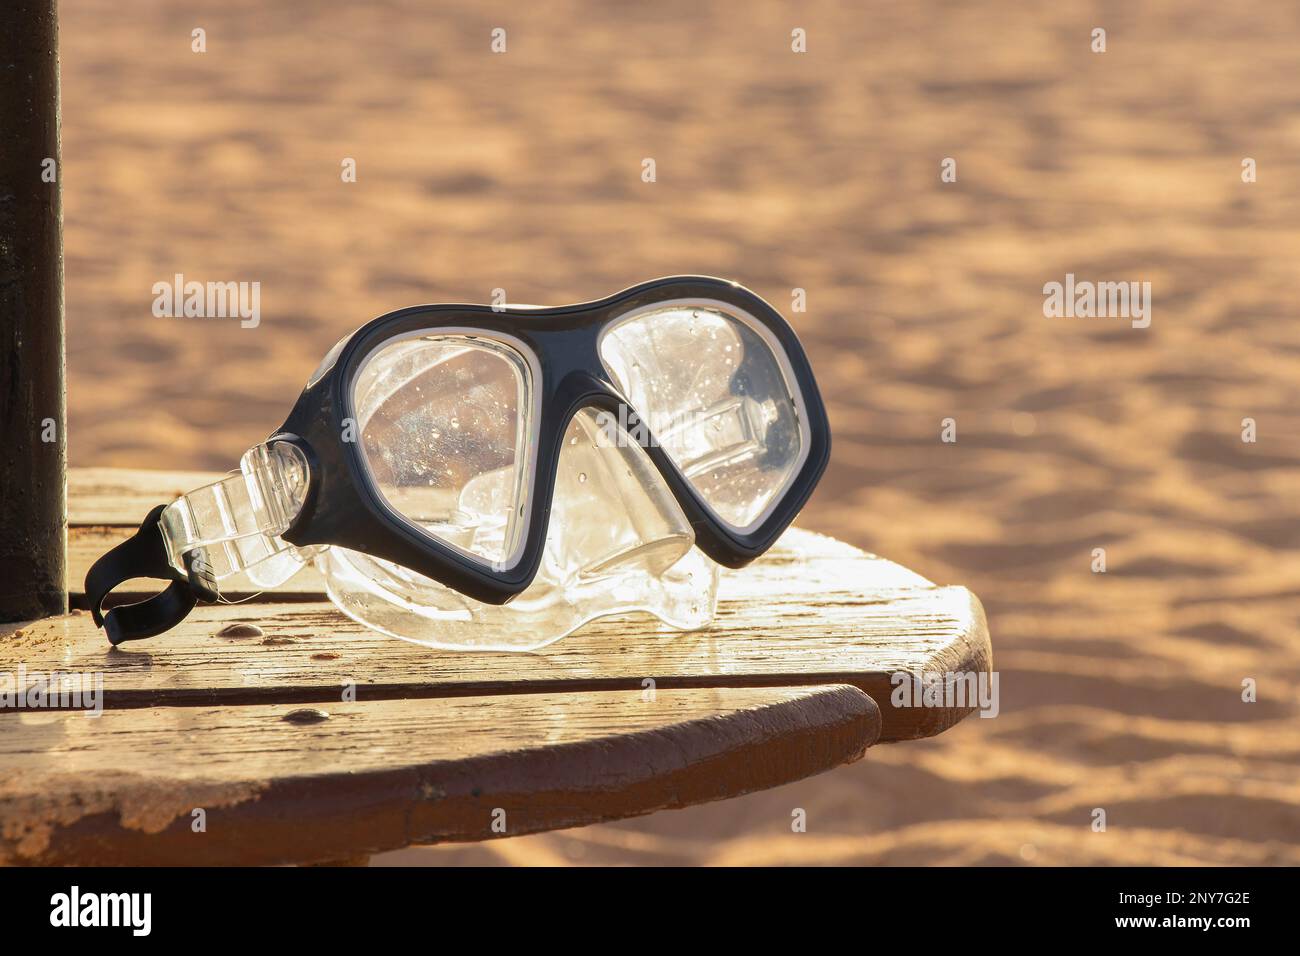 maschera per immersioni si trova sabbia in egitto Foto Stock